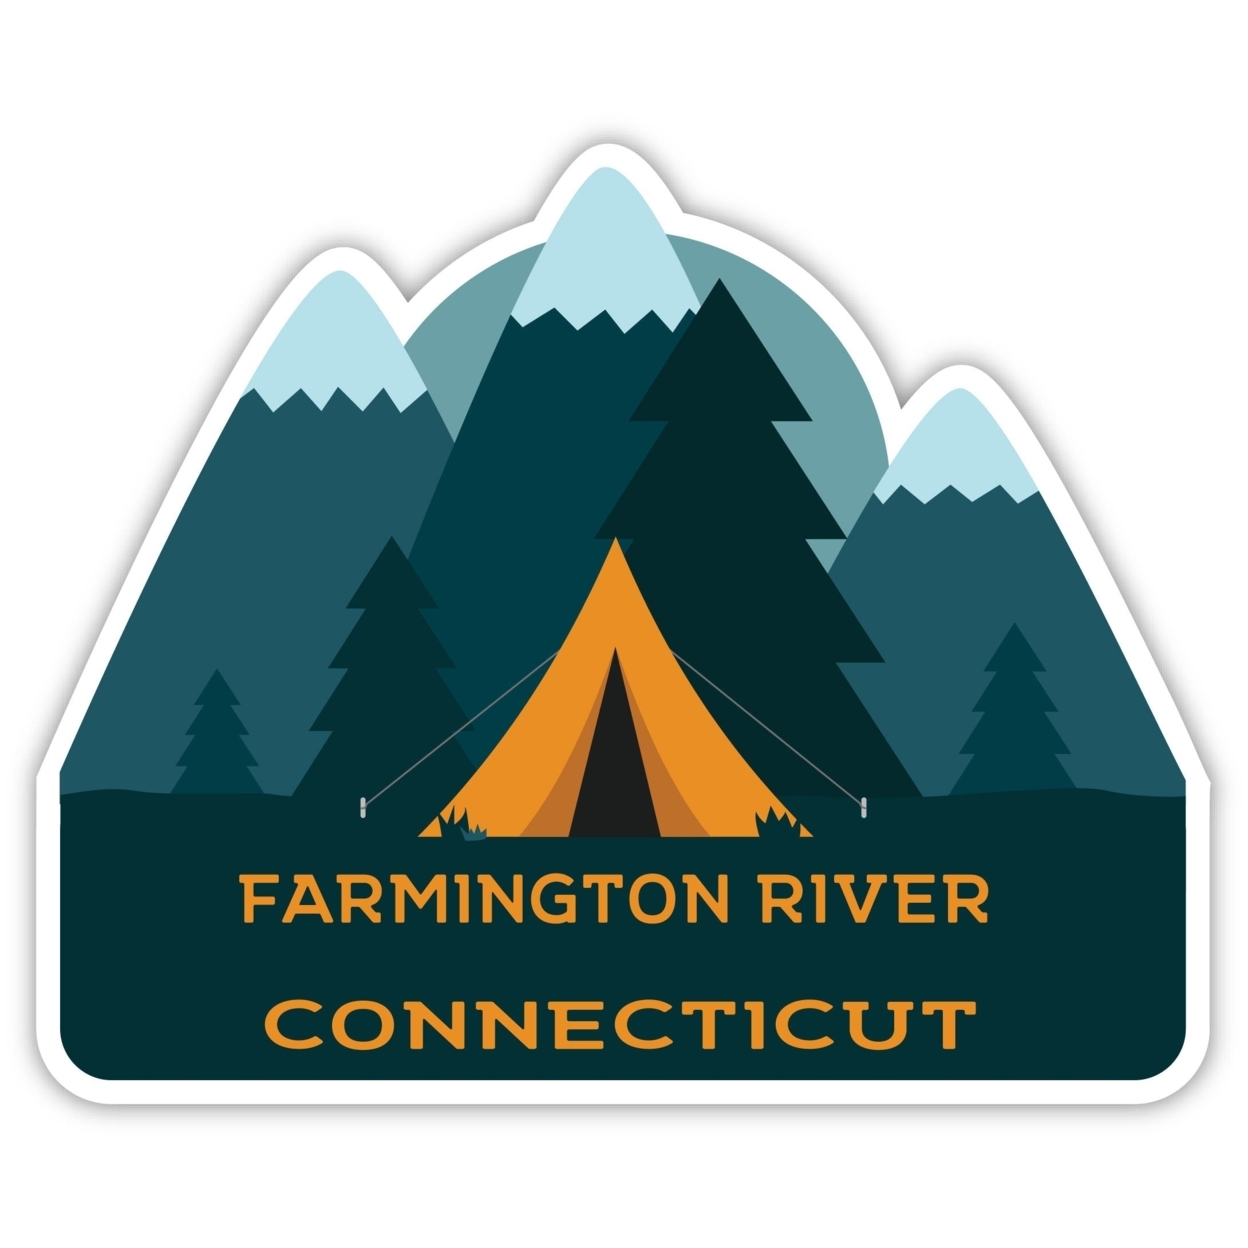 Farmington River Connecticut Souvenir Decorative Stickers (Choose Theme And Size) - 4-Pack, 12-Inch, Tent